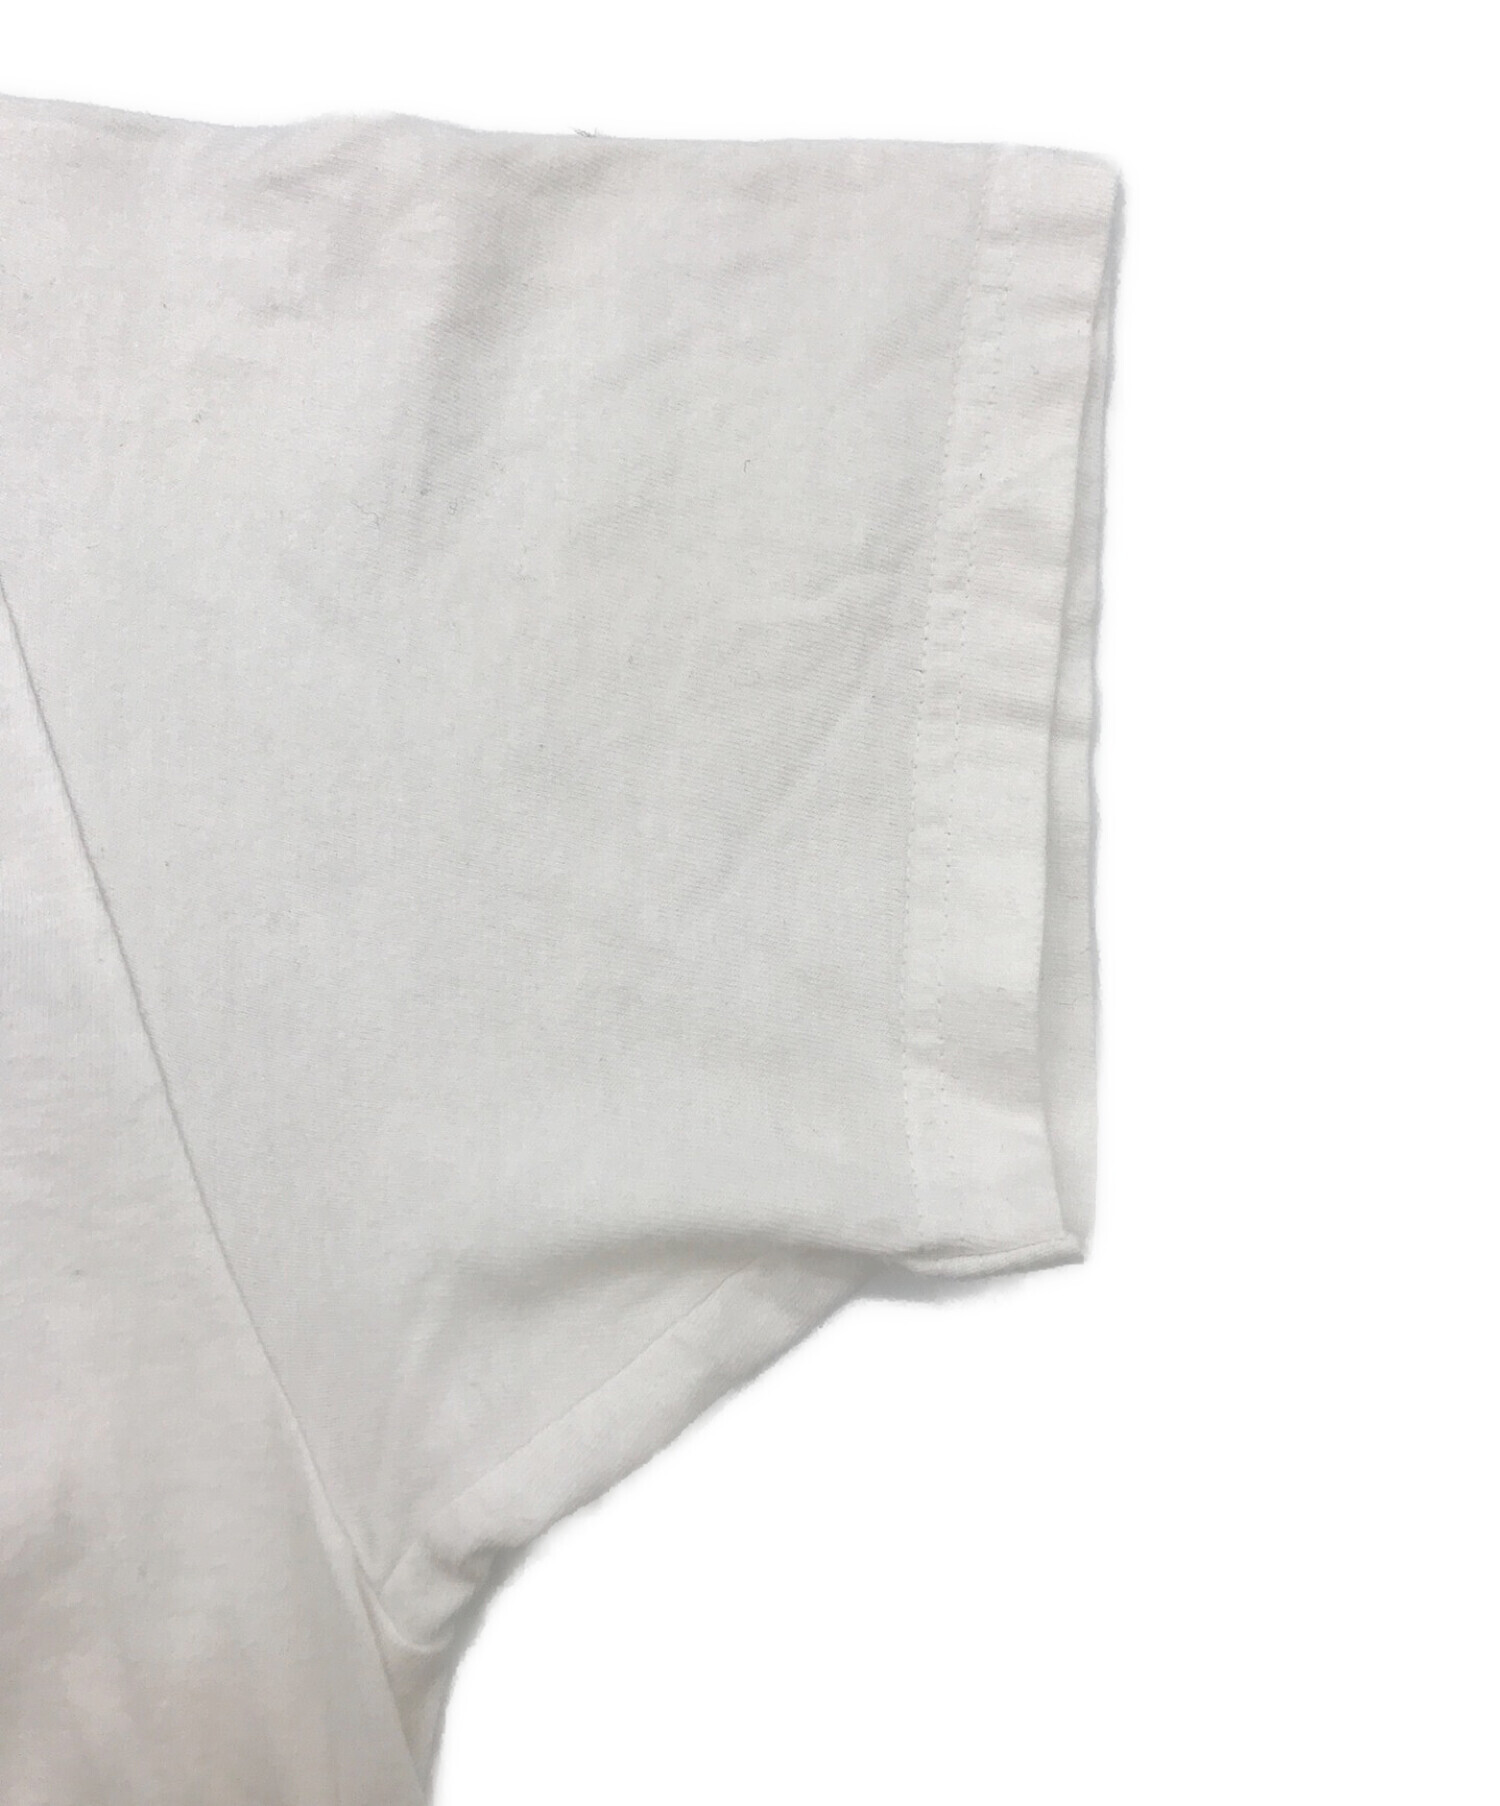 SUPREME×AKIRA (シュプリーム×アキラ) コラボバックプリントTシャツ ホワイト×ブラック サイズ:M